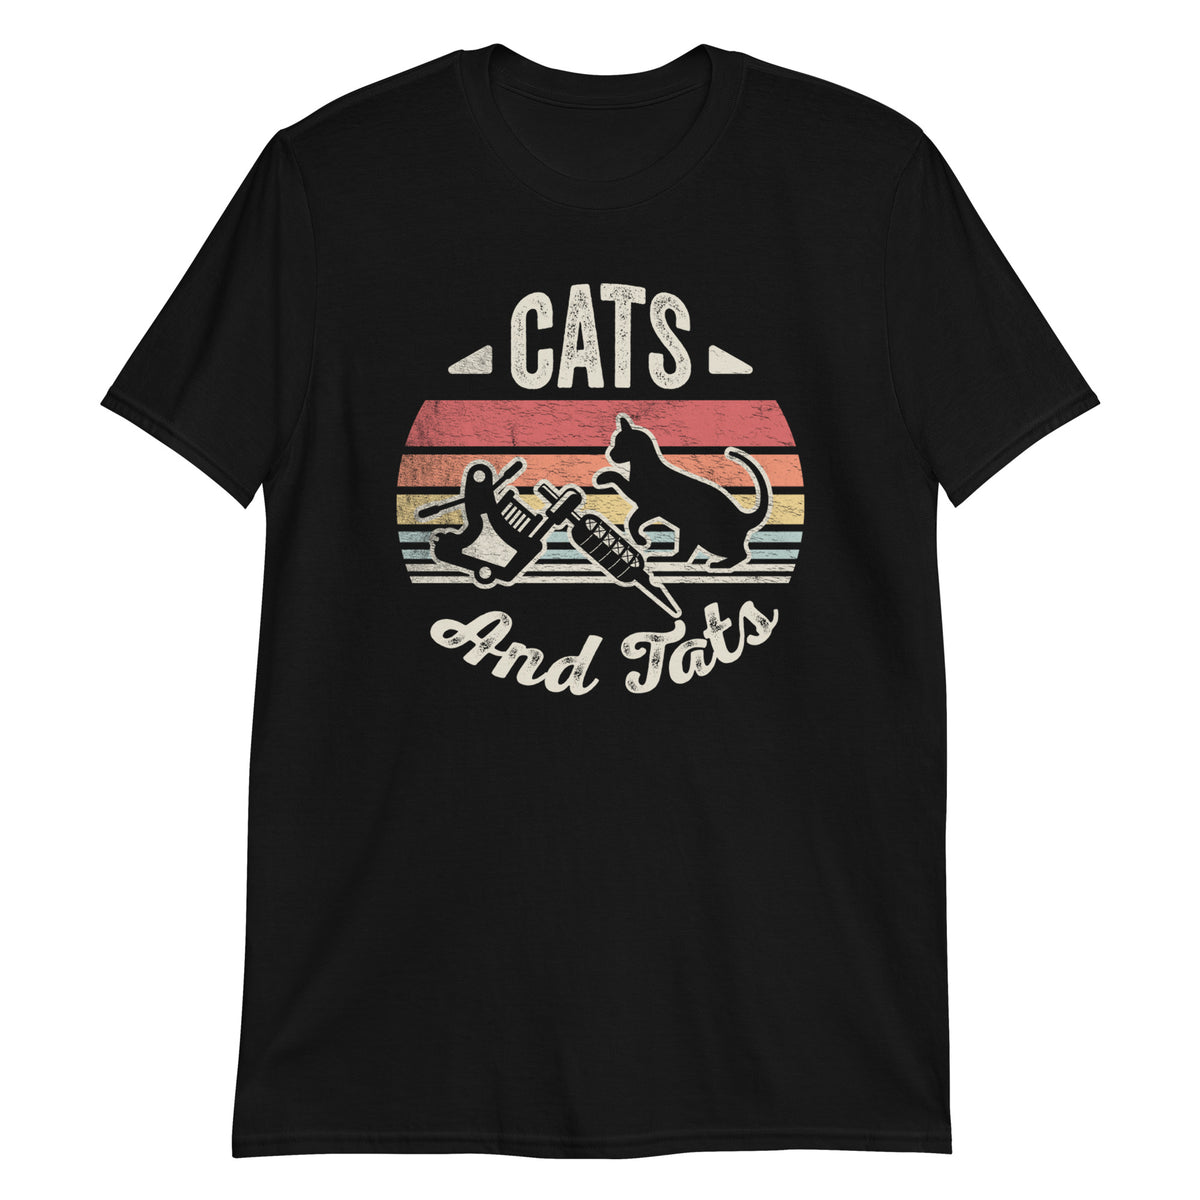 Cats and Tats T-Shirt